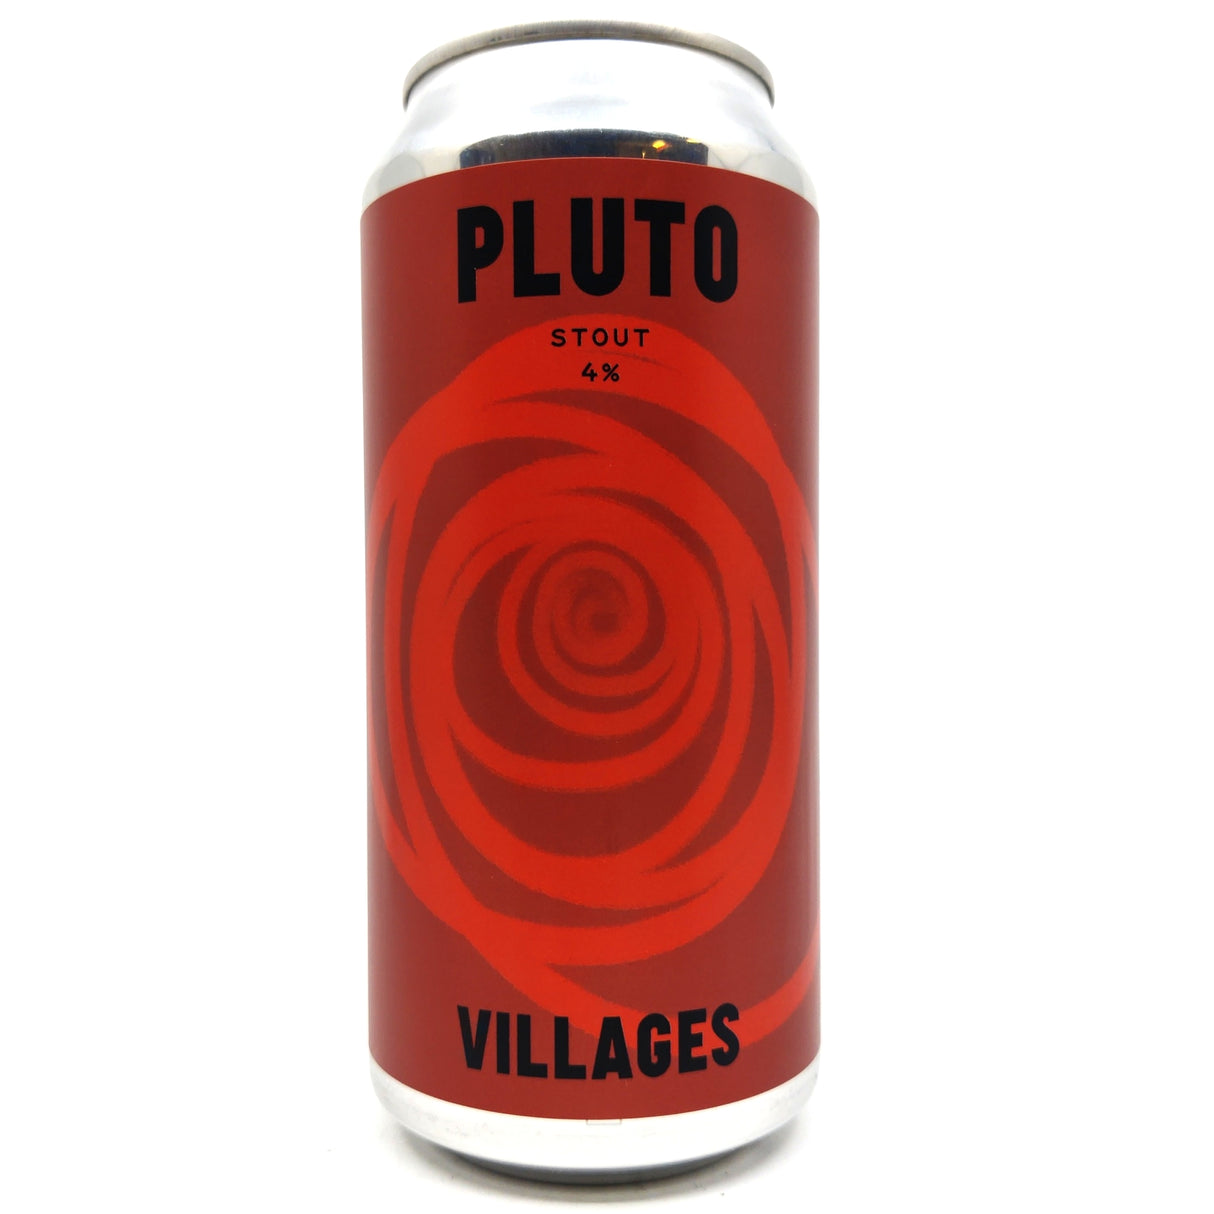 Villages Pluto Stout 4% (440ml can)-Hop Burns & Black